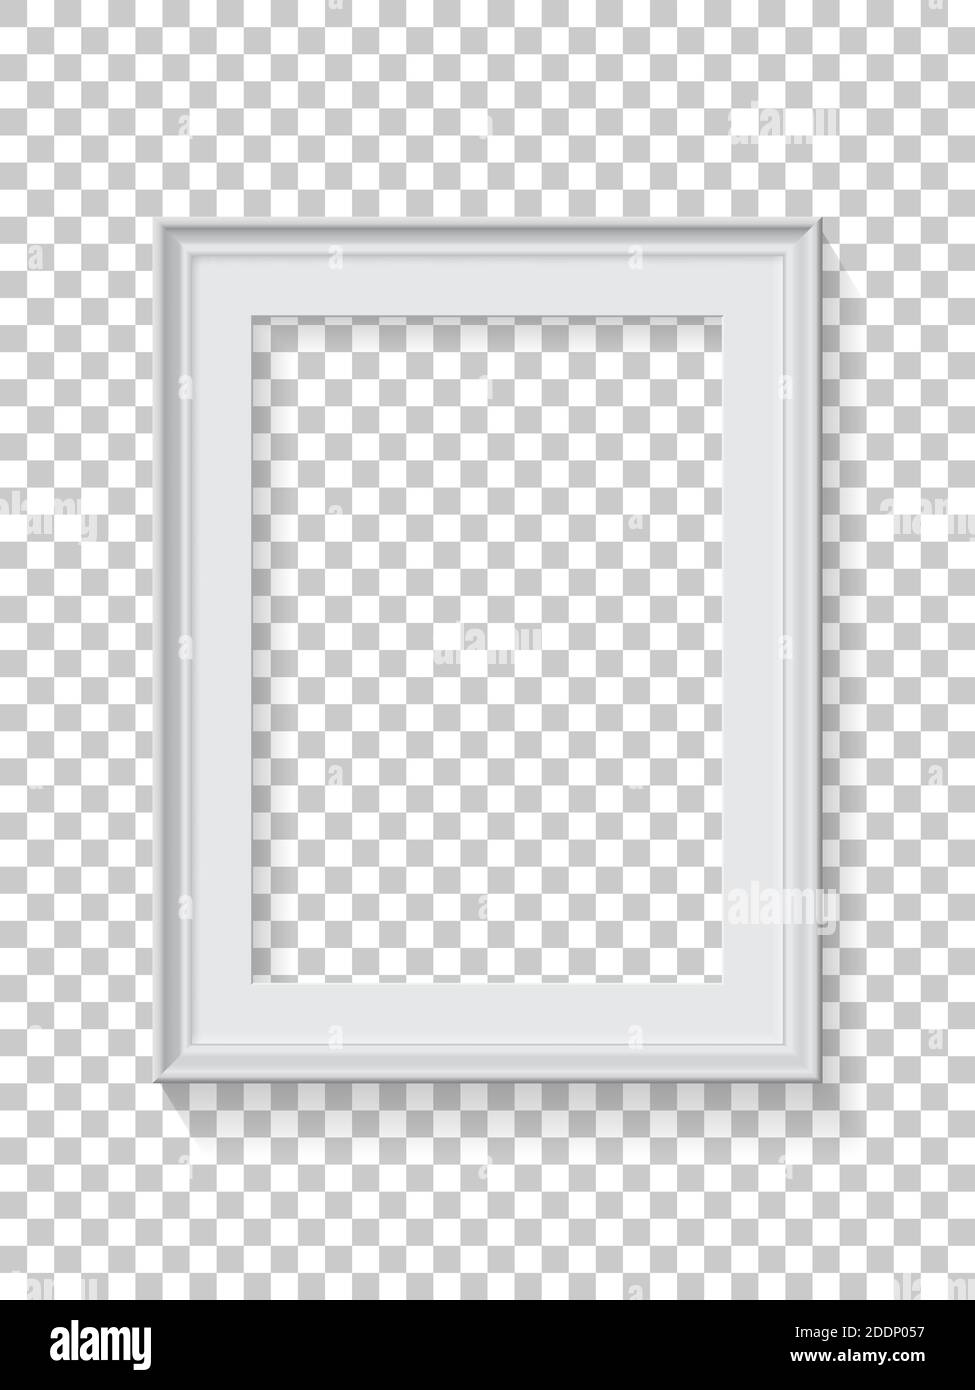 Cornice rettangolare bianca per immagini su sfondo trasparente